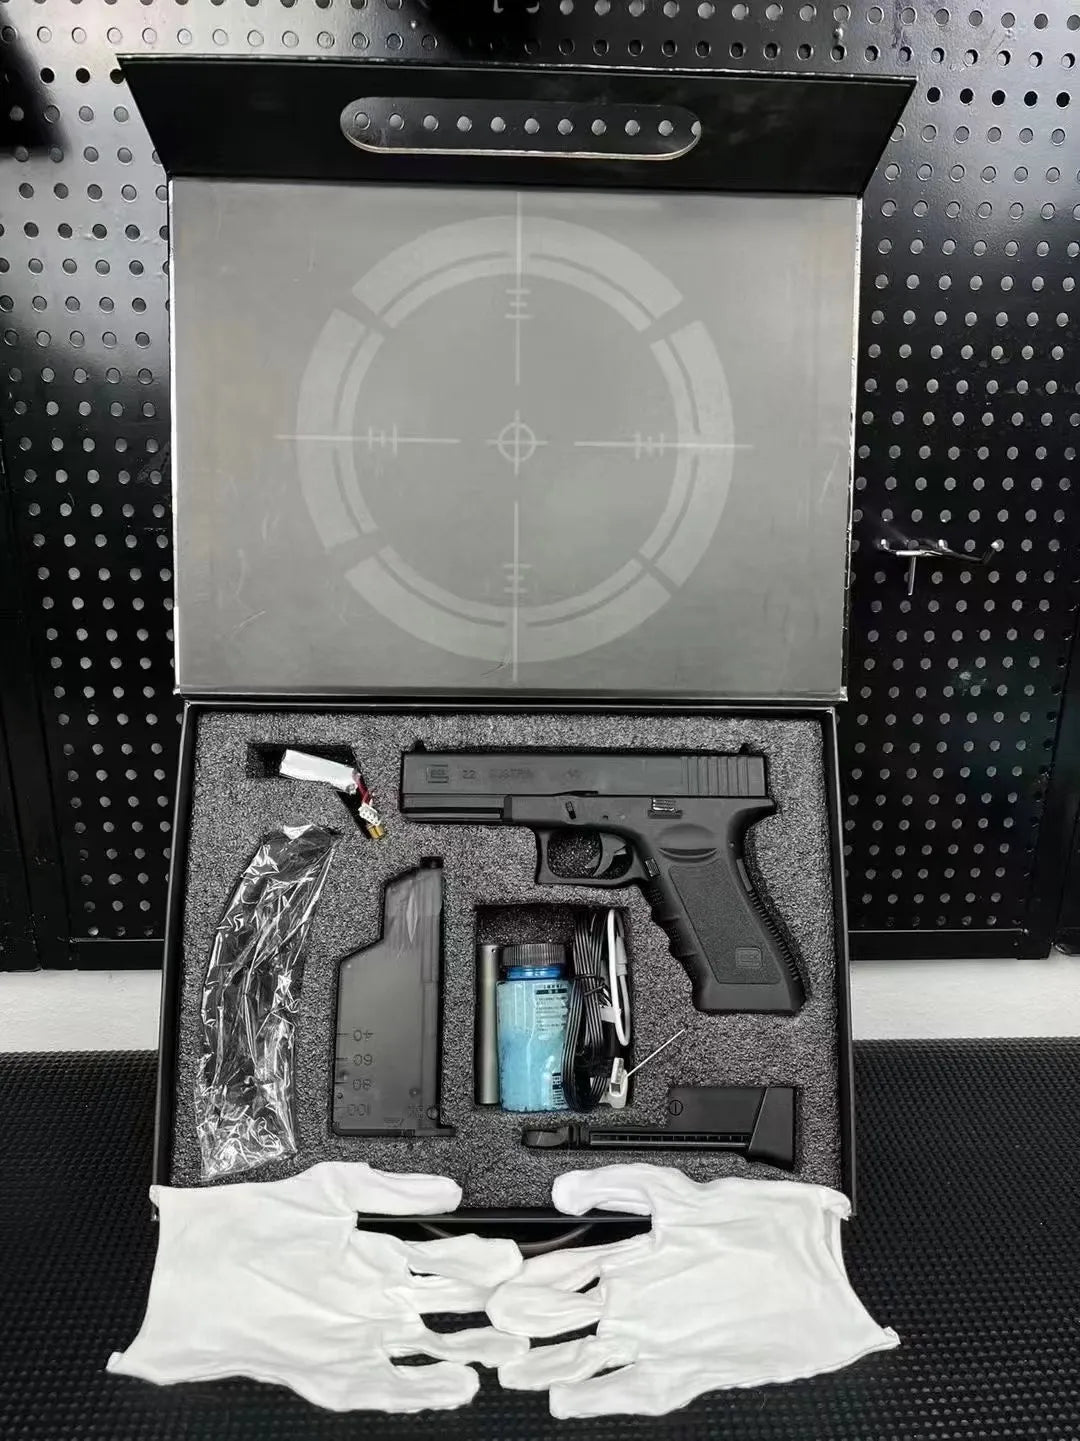 Glock G22 Gel Blaster Laser Tag Pistol Toy Gun